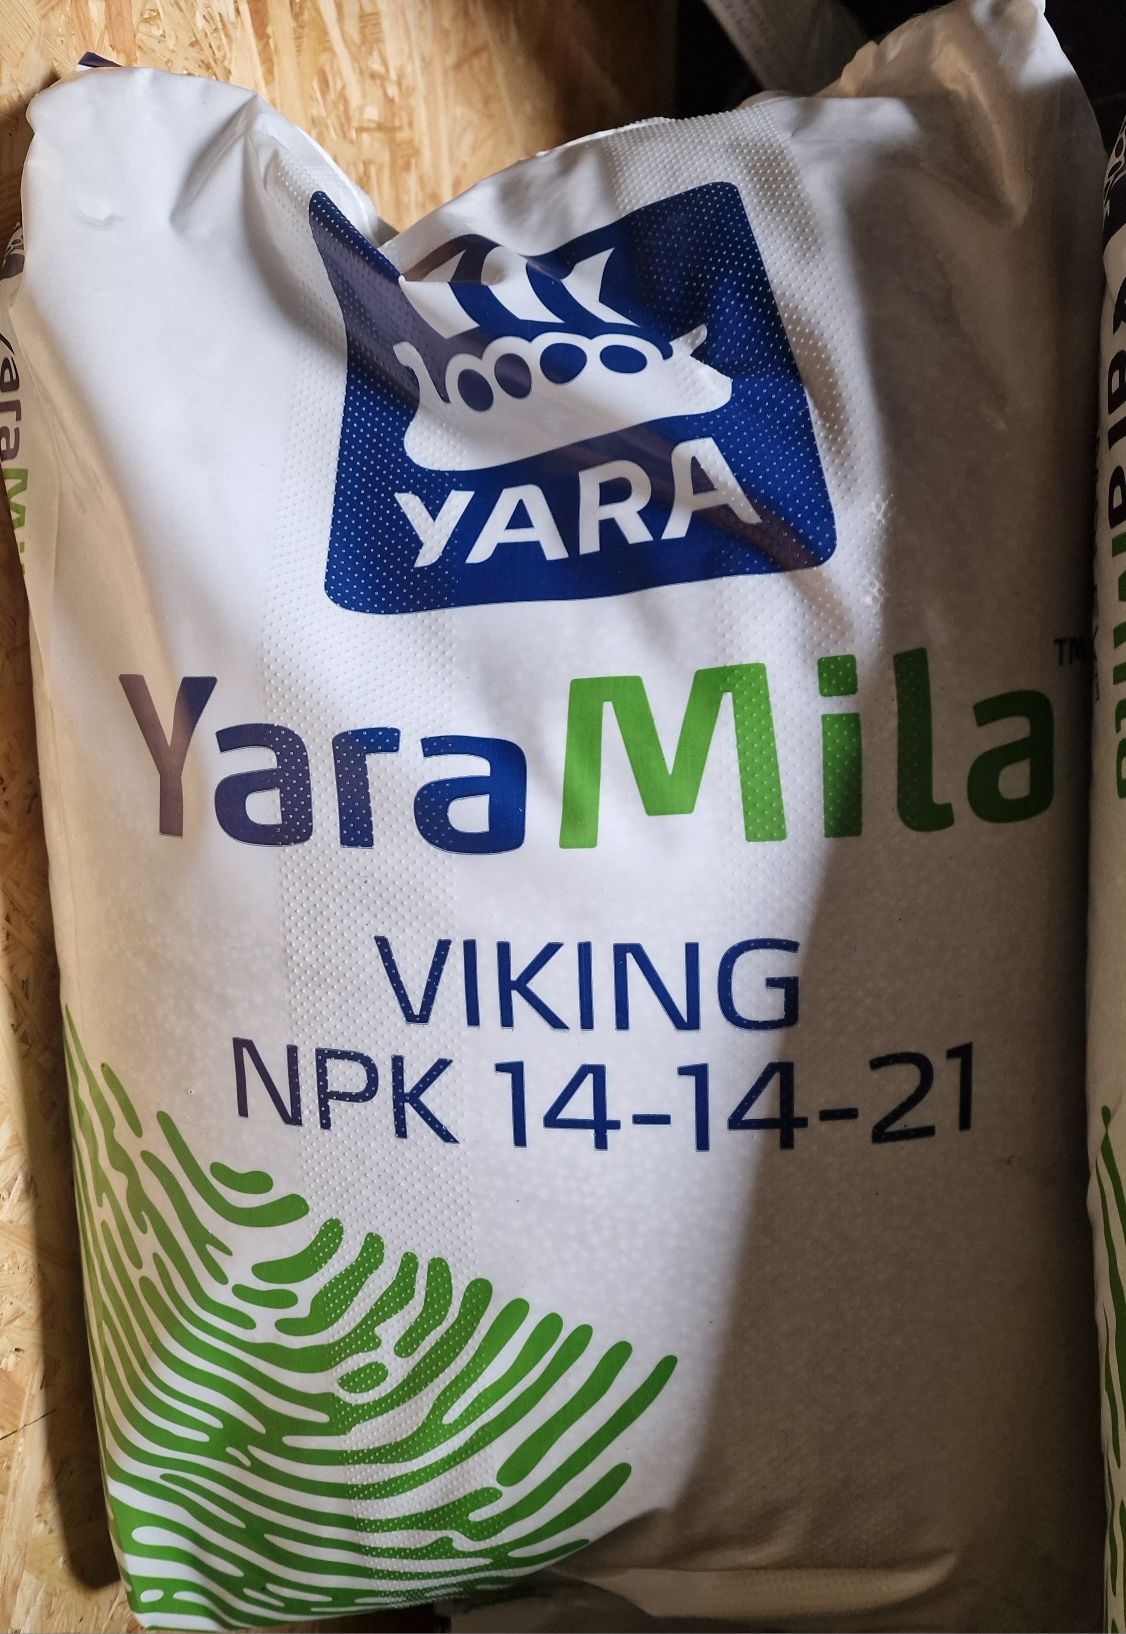 Yara Mila Viking 25 kg, nawóz NPK